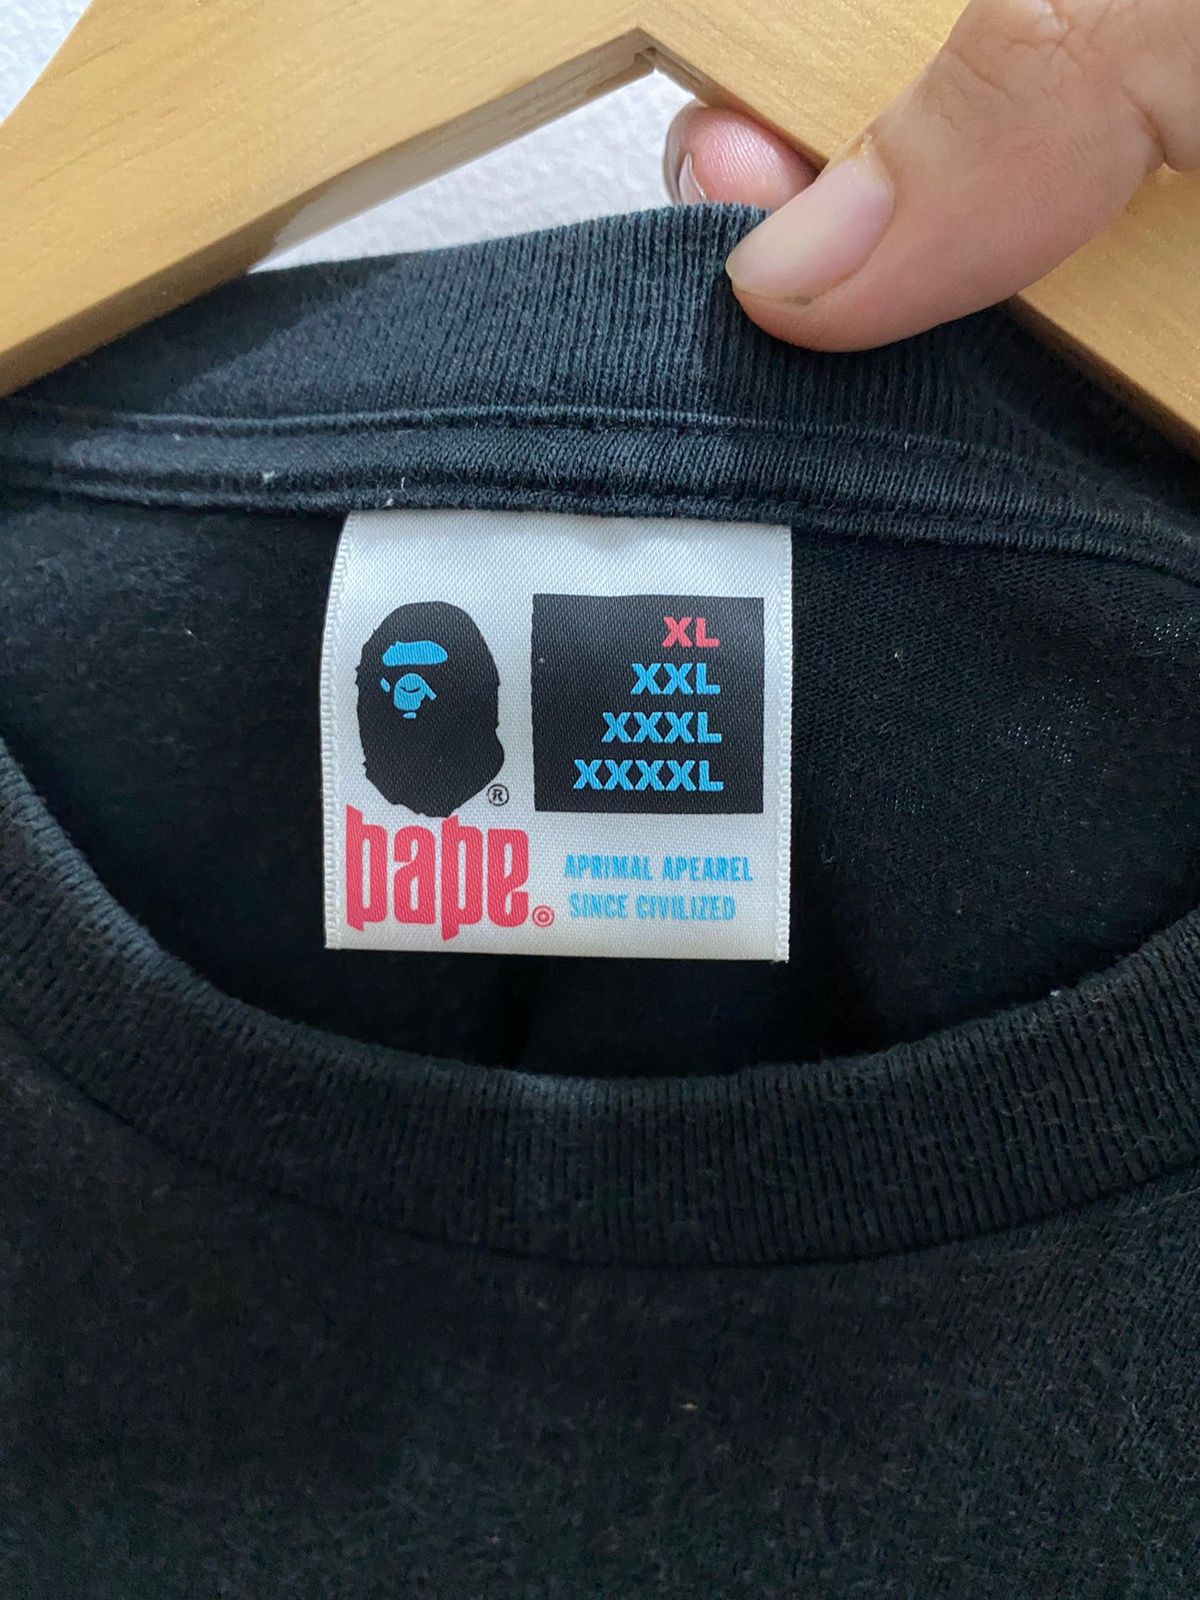 🔥 Bape X Jacob & Co Rare Collaboration T-shirt 2006 - 9